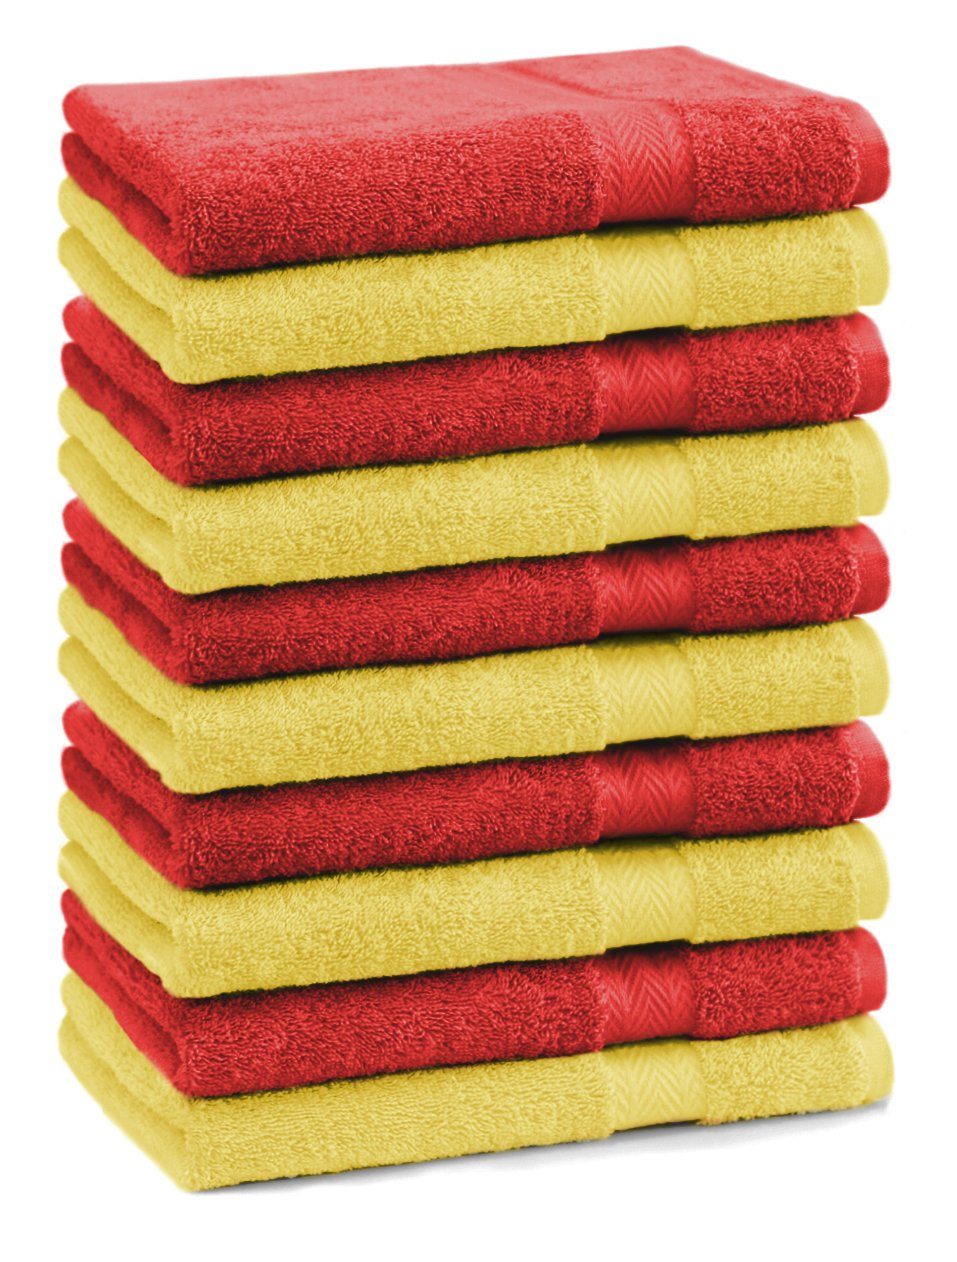 Betz Gästehandtücher 10 Stück Gästehandtücher Premium 100% Baumwolle Gästetuch-Set 30x50 cm Farbe gelb und rot, 100% Baumwolle